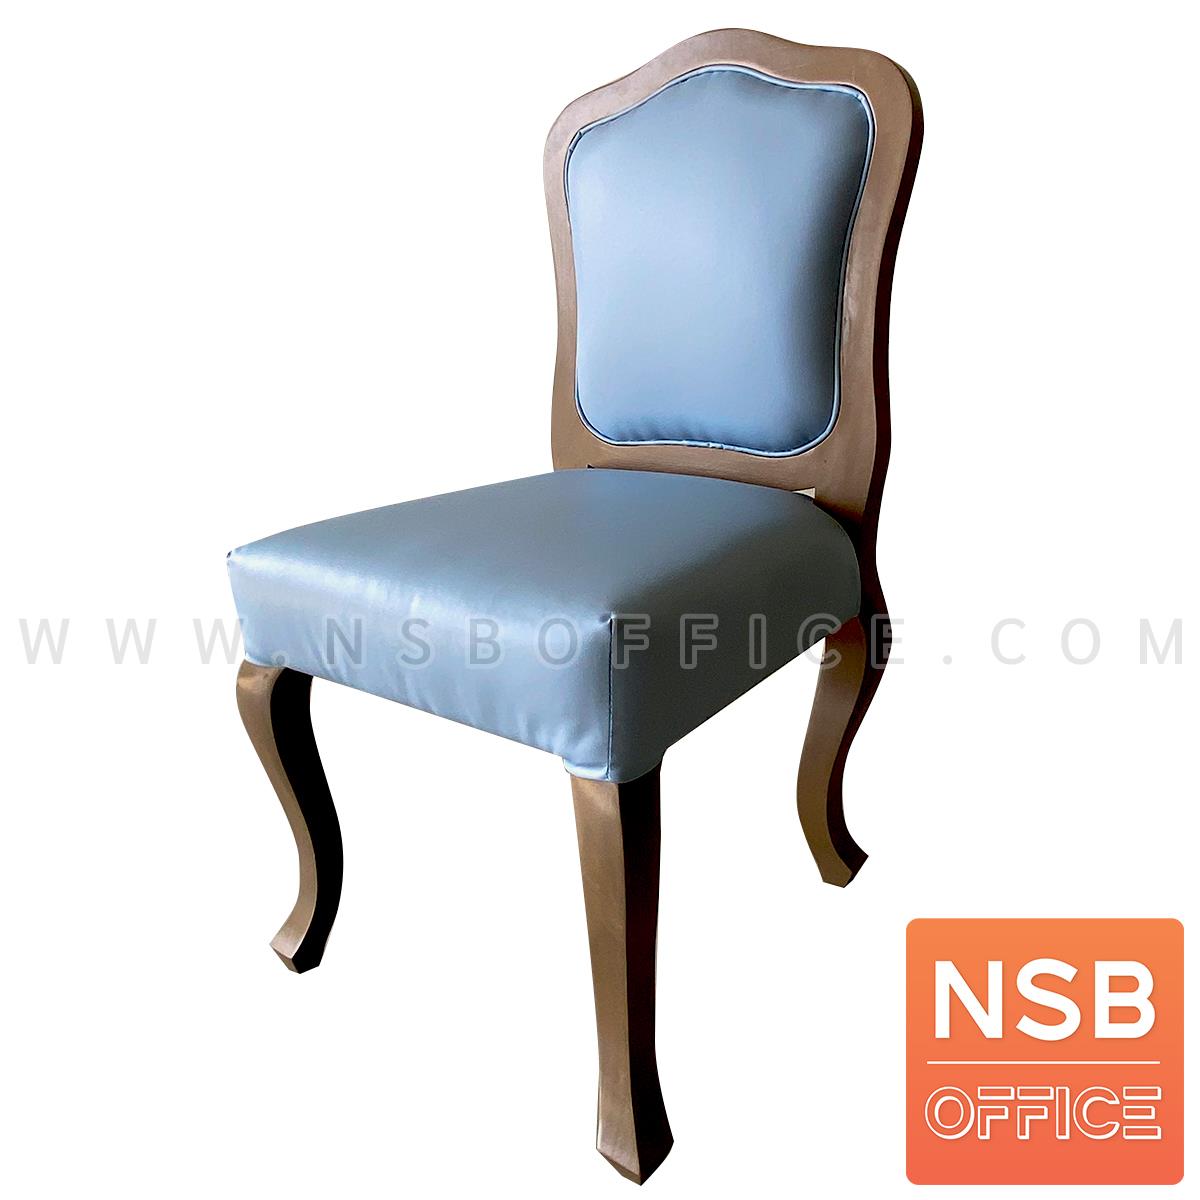 B31A052:เก้าอี้ไม้สักจริง รุ่น Cloudless 2 (คลาวเลส 2)  หนังเทียมสีฟ้า